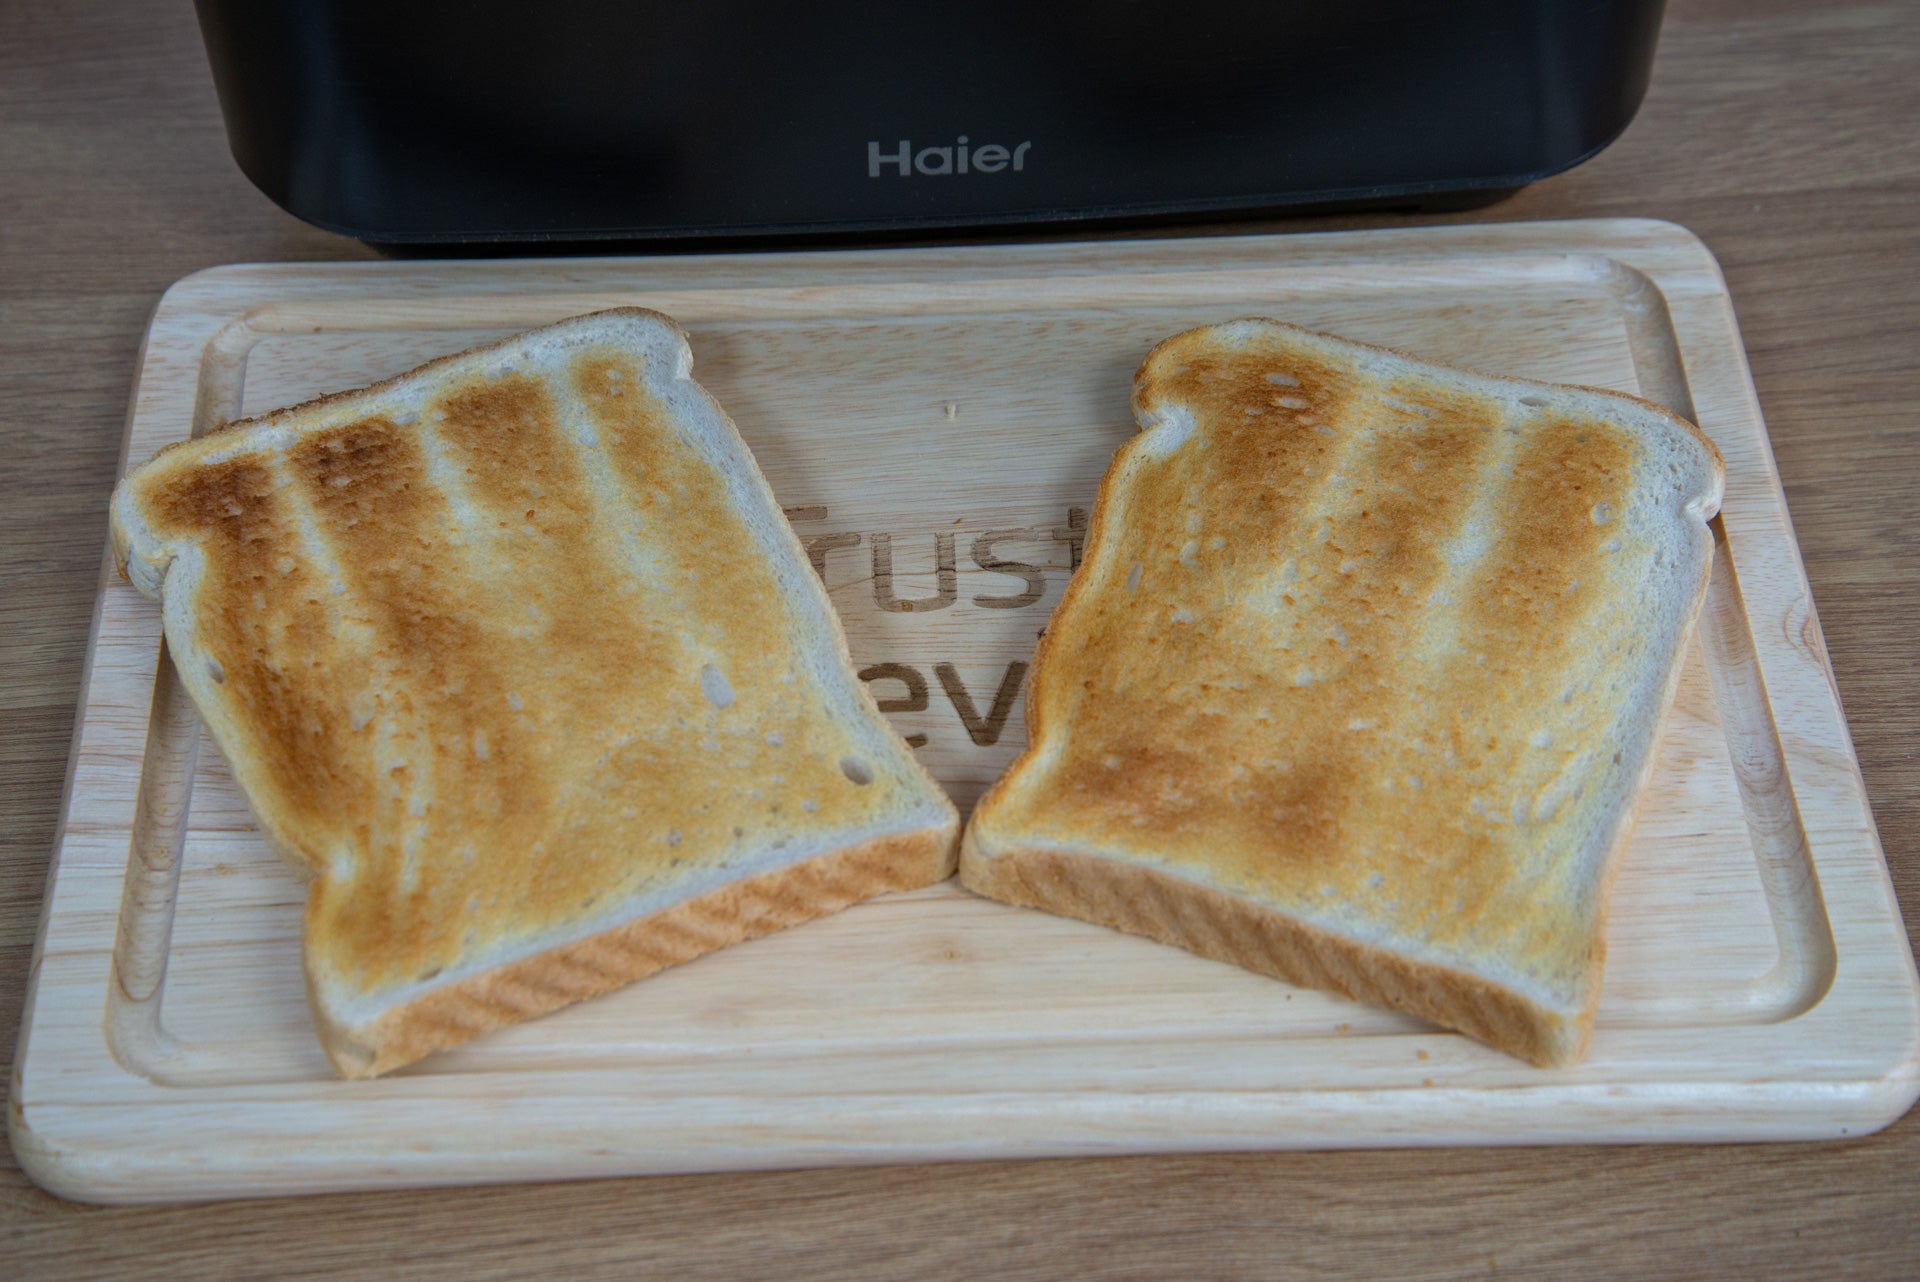 Haier I-Master Series 5 Toaster 2 Slice toasting sample 1